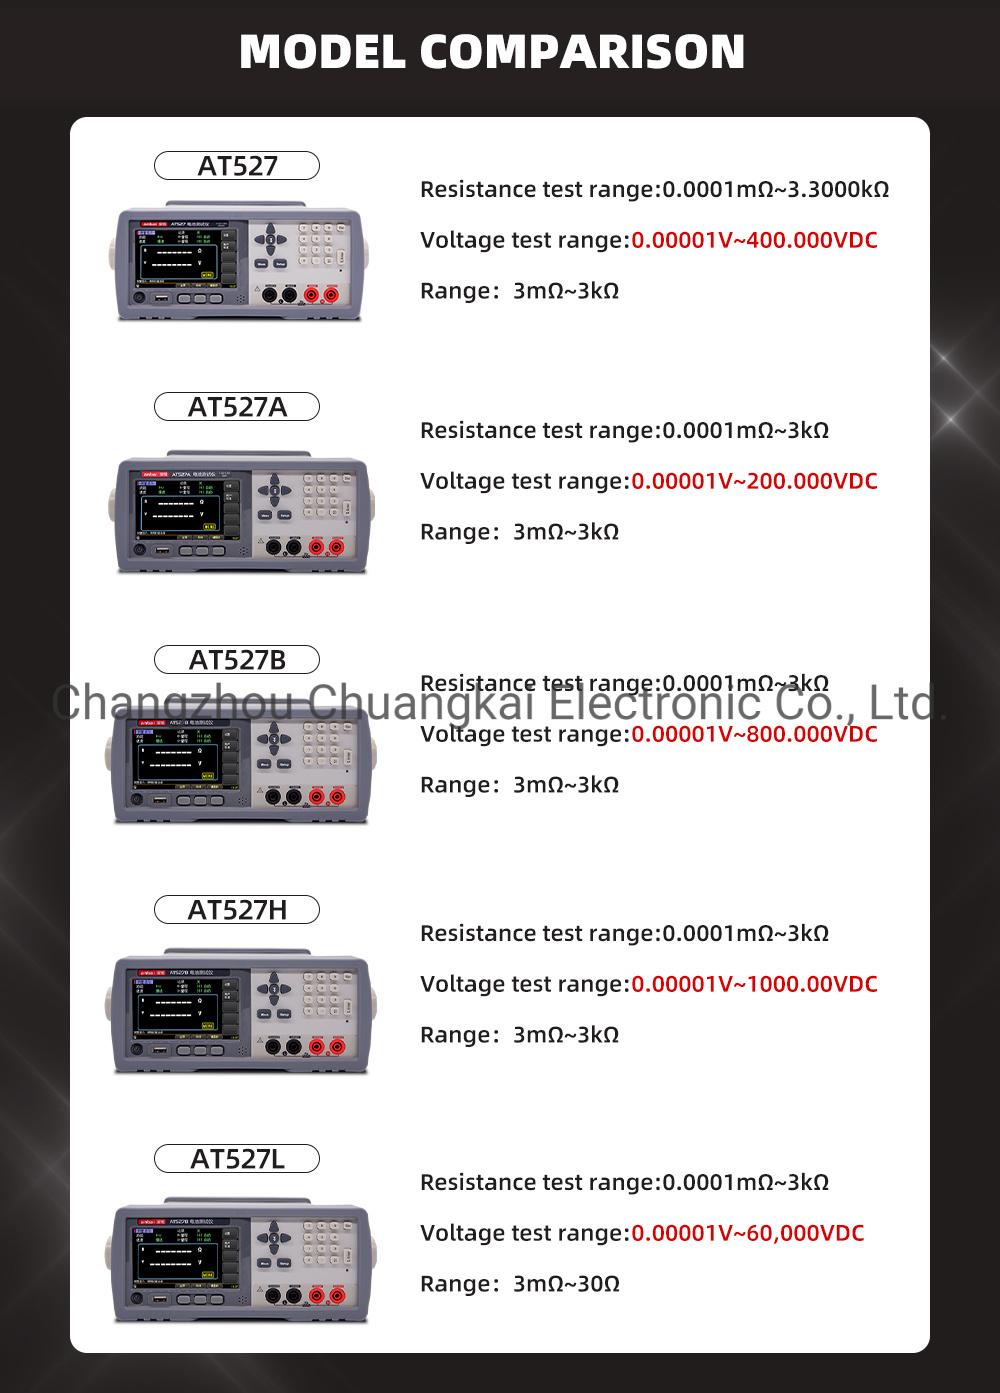 At527L Battery Tester Battery Internal Resistance Meter Voltage Range 0.00001V~60.000VDC